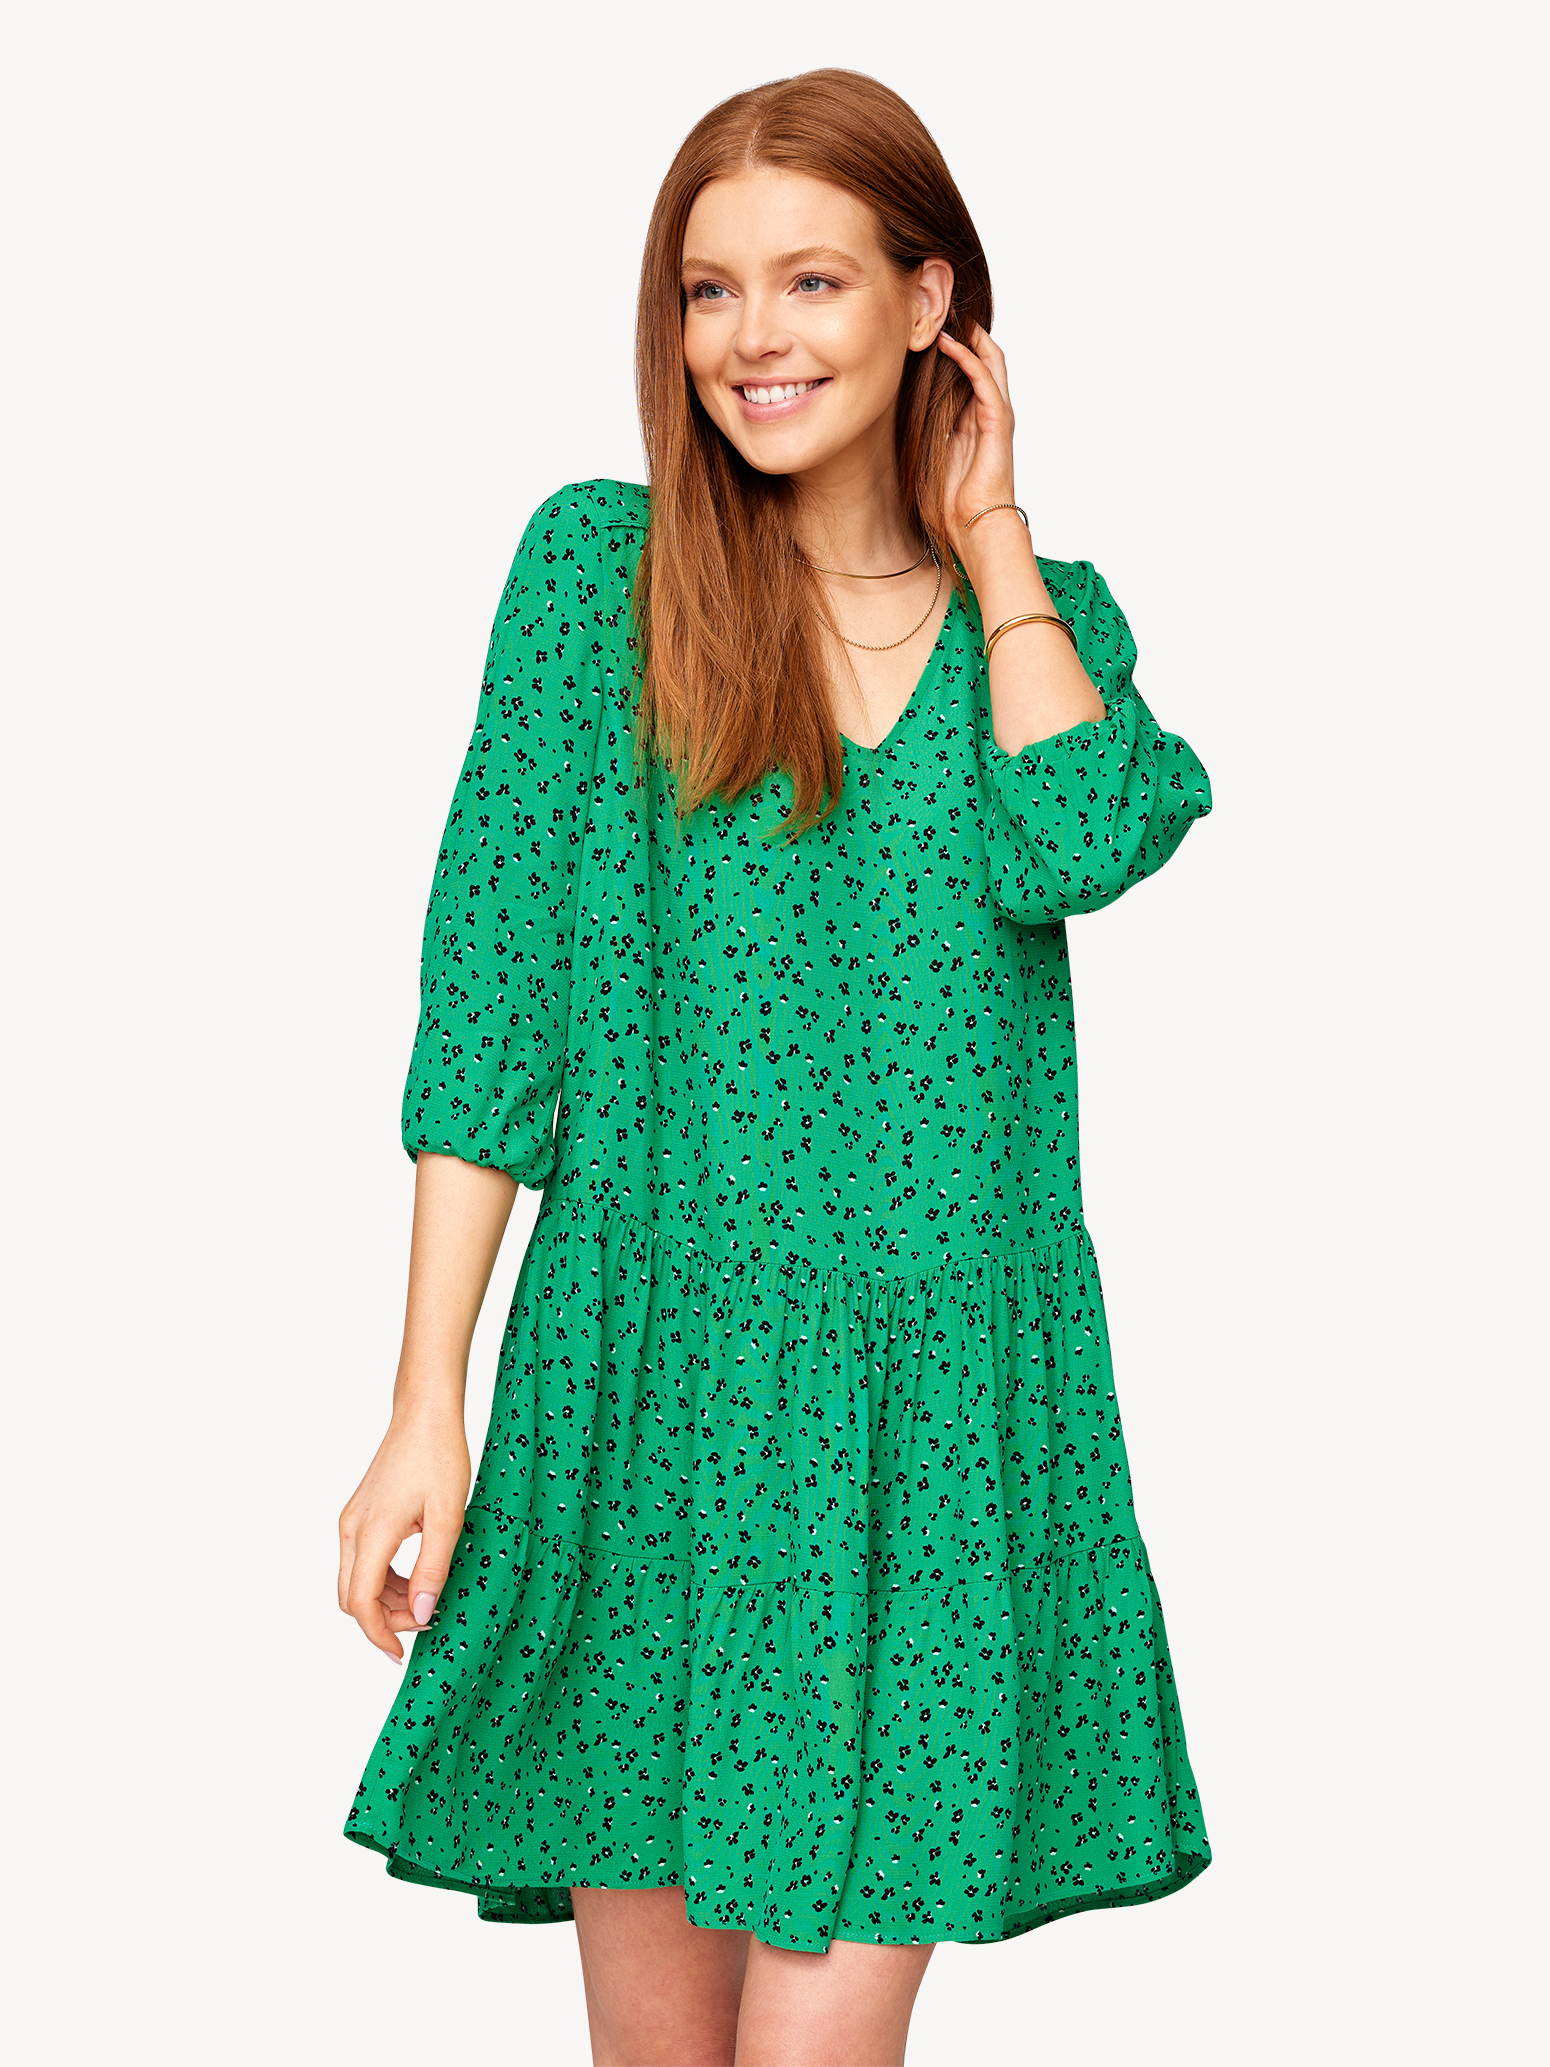 Kleid - grün TAW0154-63059: Tamaris Kleider online kaufen